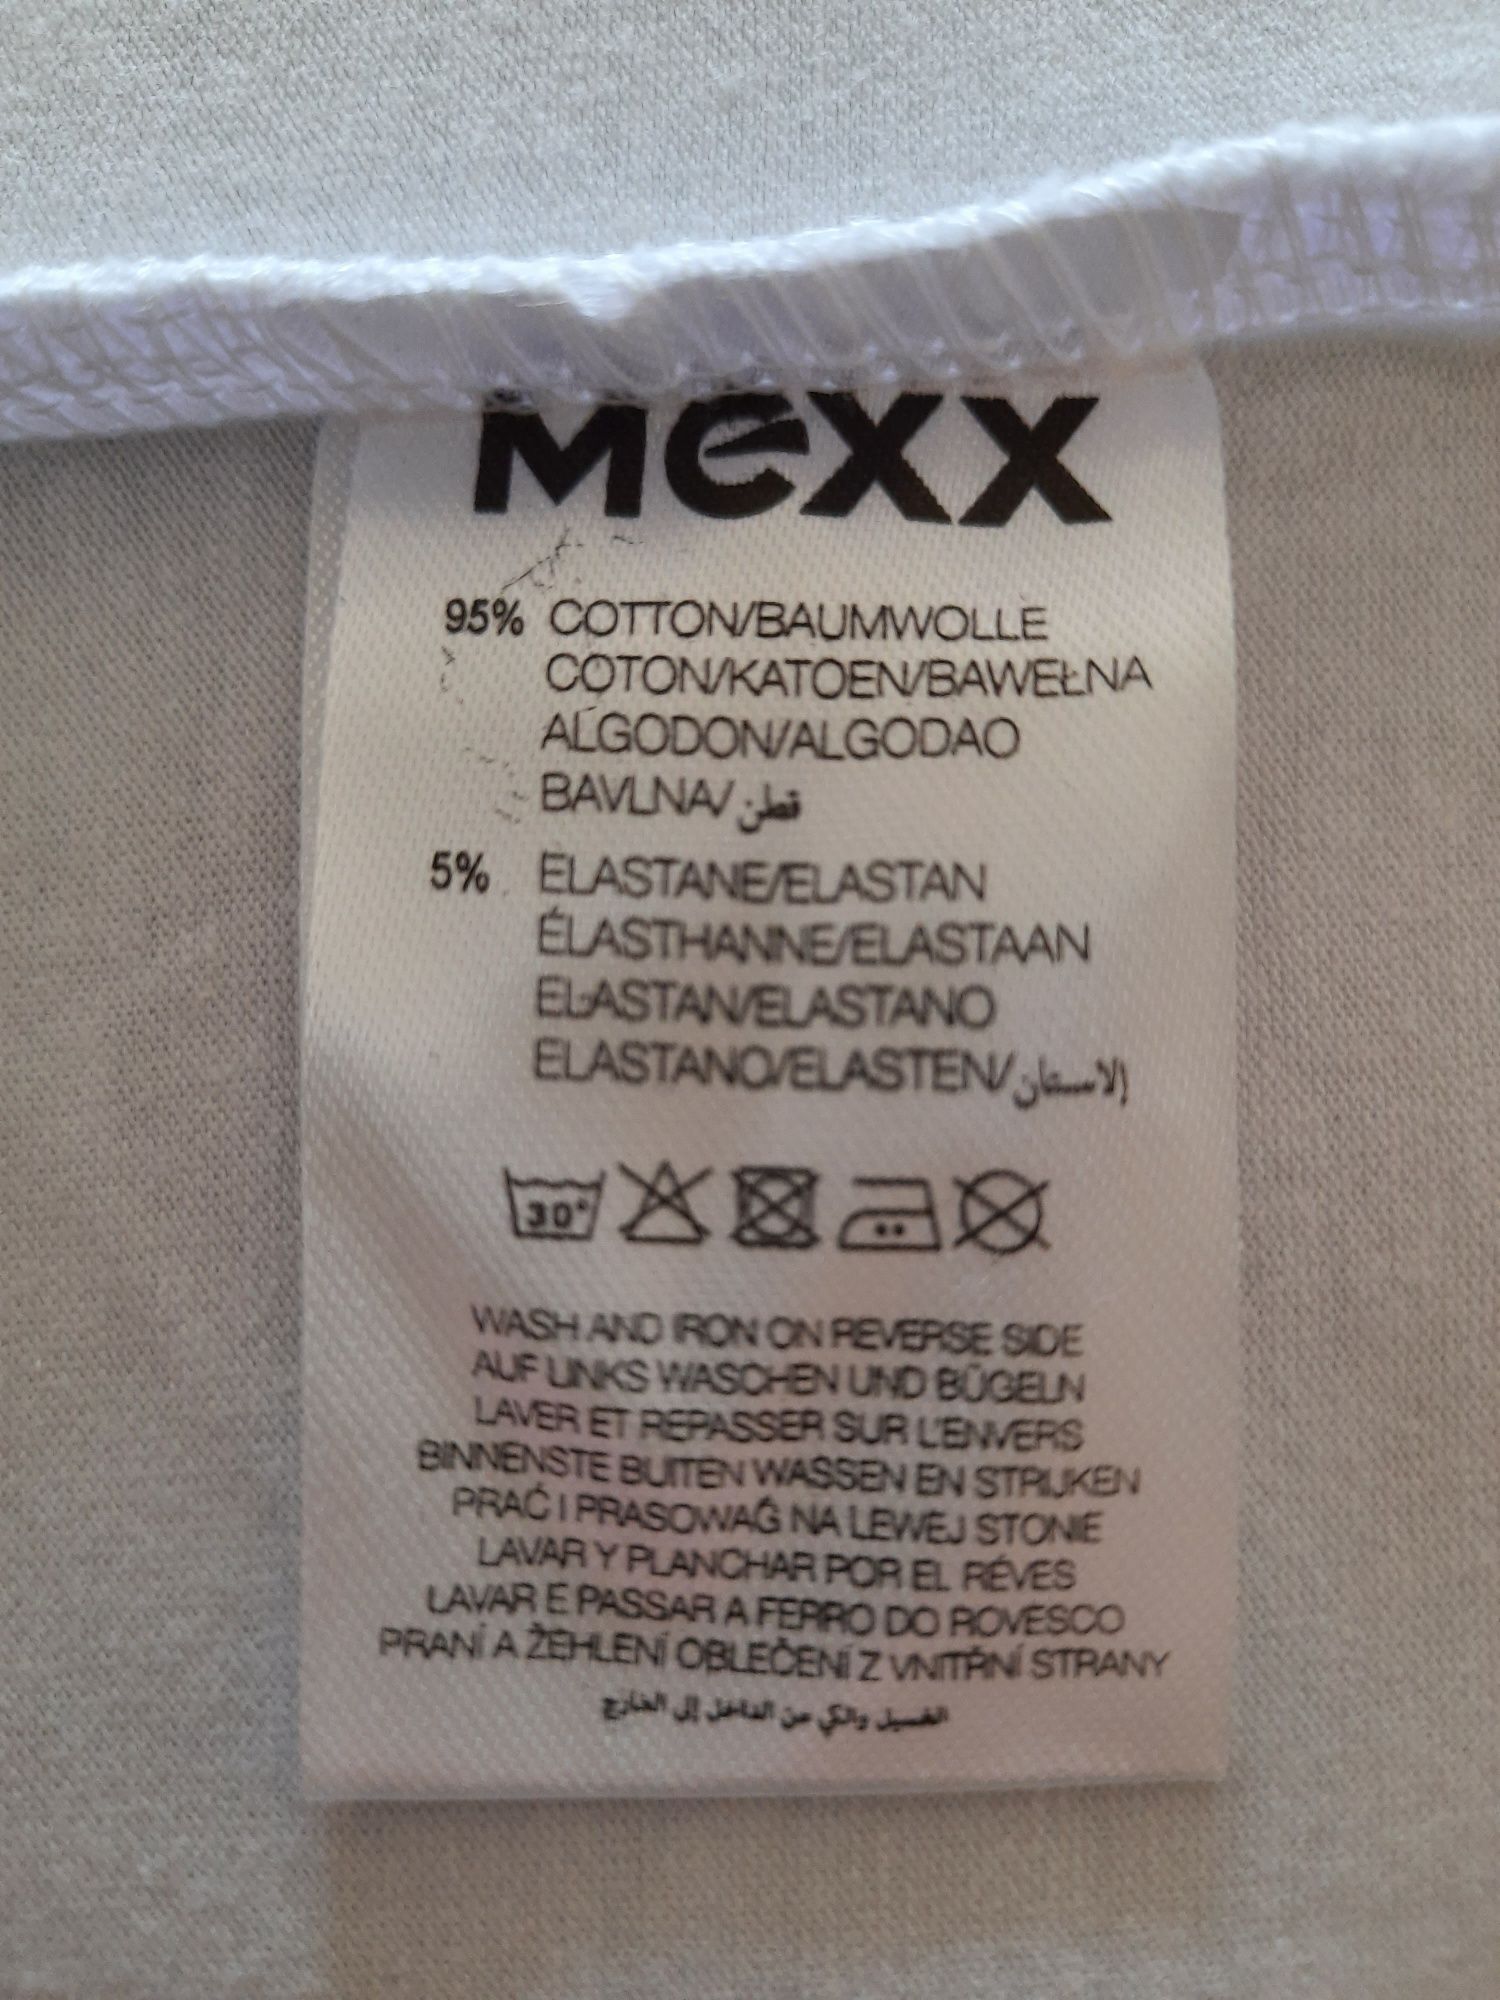 Футболка муж Mexx раз XL (50) цена 500 гр оригинал, новая